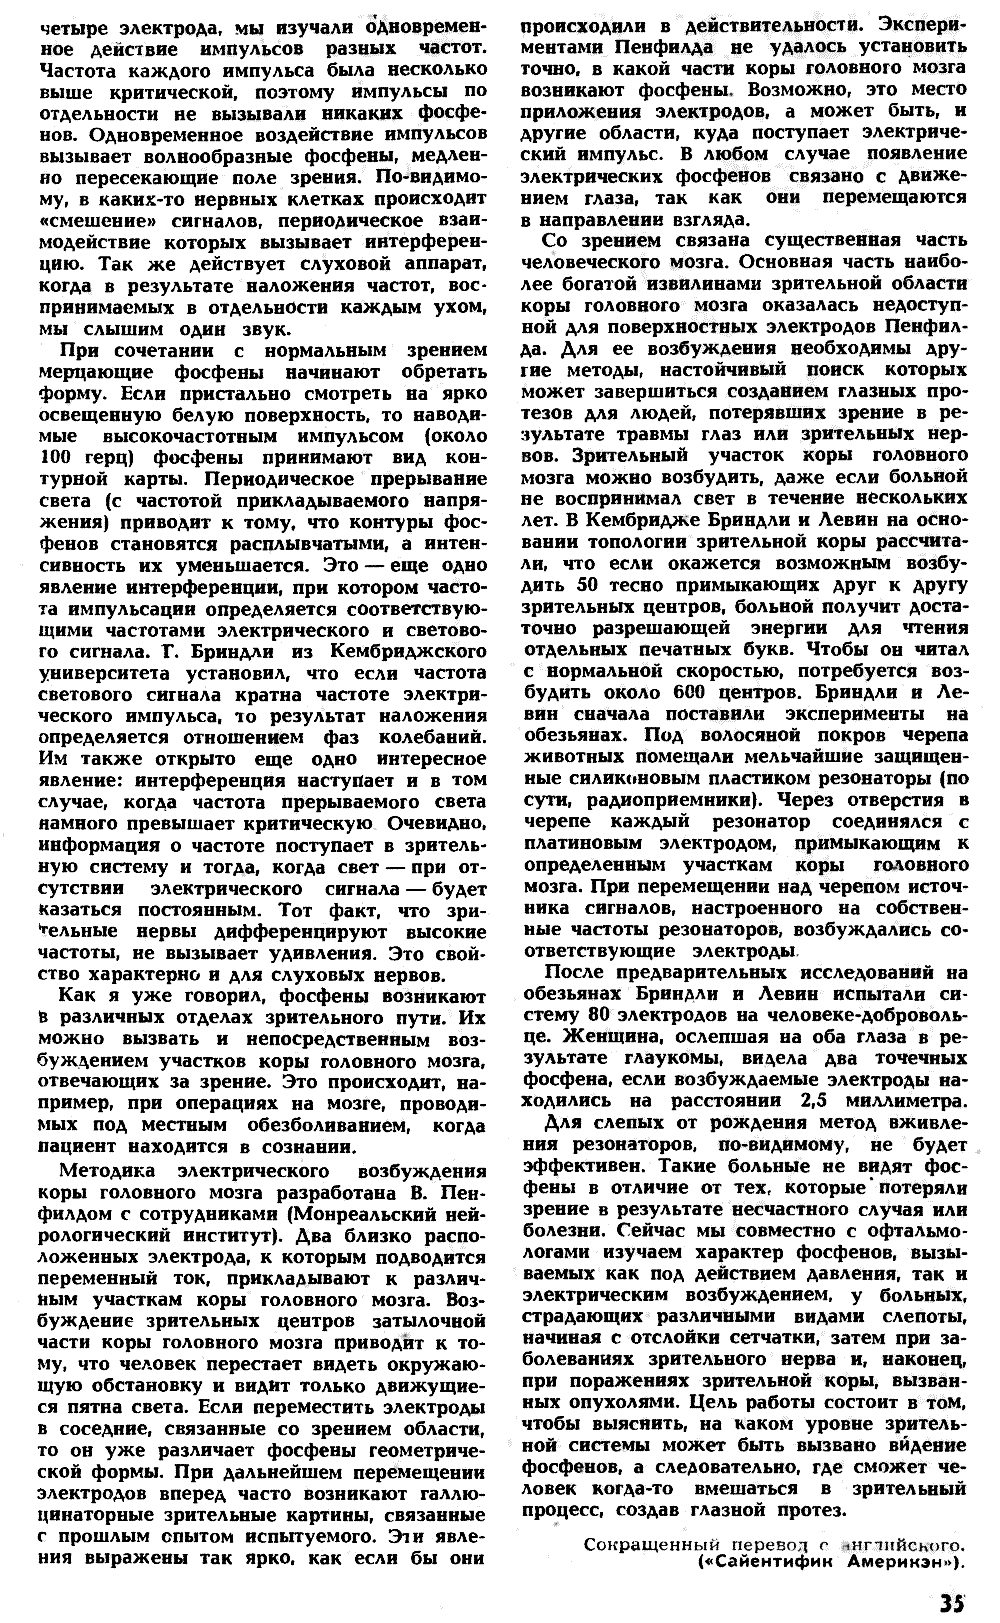 Фосфены. Г. Остер. Наука и жизнь, 1971, №4, с.33-37 (вкладка). Фотокопия №4